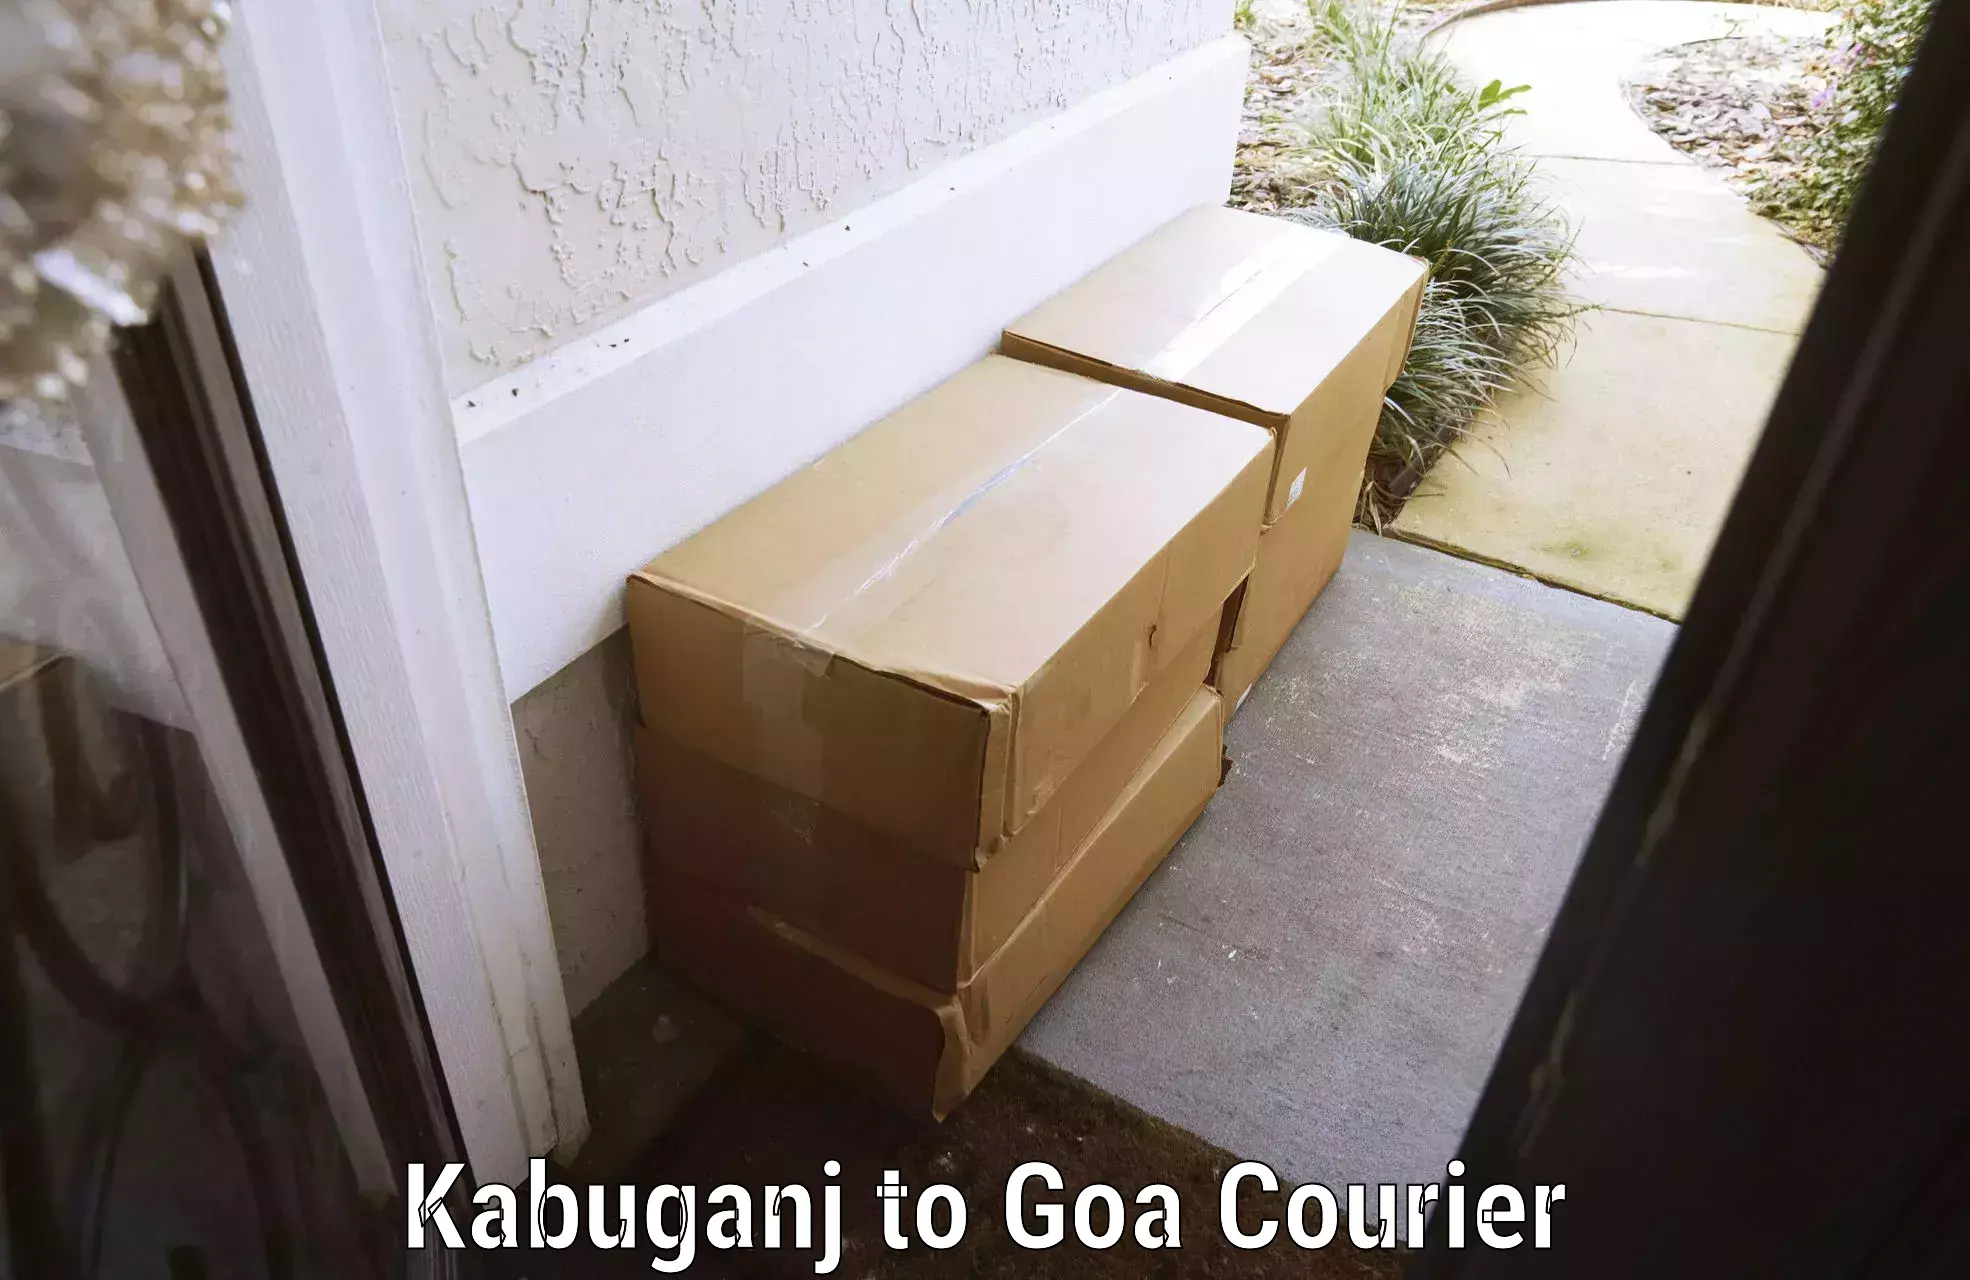 Baggage transport cost Kabuganj to Goa University